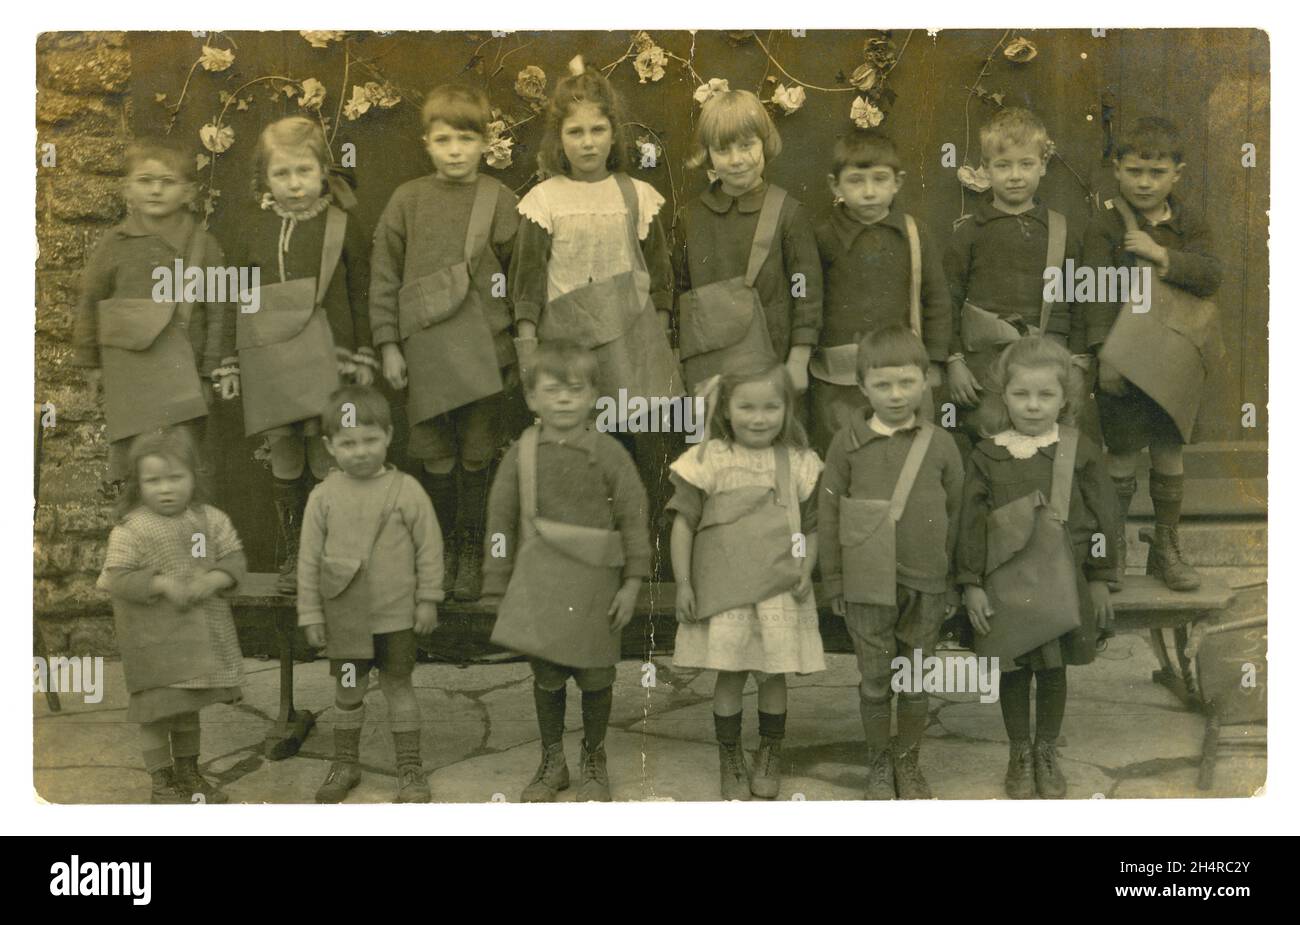 Originell charmant und klar, edwardianische Postkarte mit einer Gruppe kleiner Schulkinder, die ihre Umhängetaschen bei einer Maitagsparade in Norwich tragen. Viele kleine Charaktere. Die Postkarte ist vom Mai 1. 1906. Norwich, Norfolk, England, Großbritannien Stockfoto